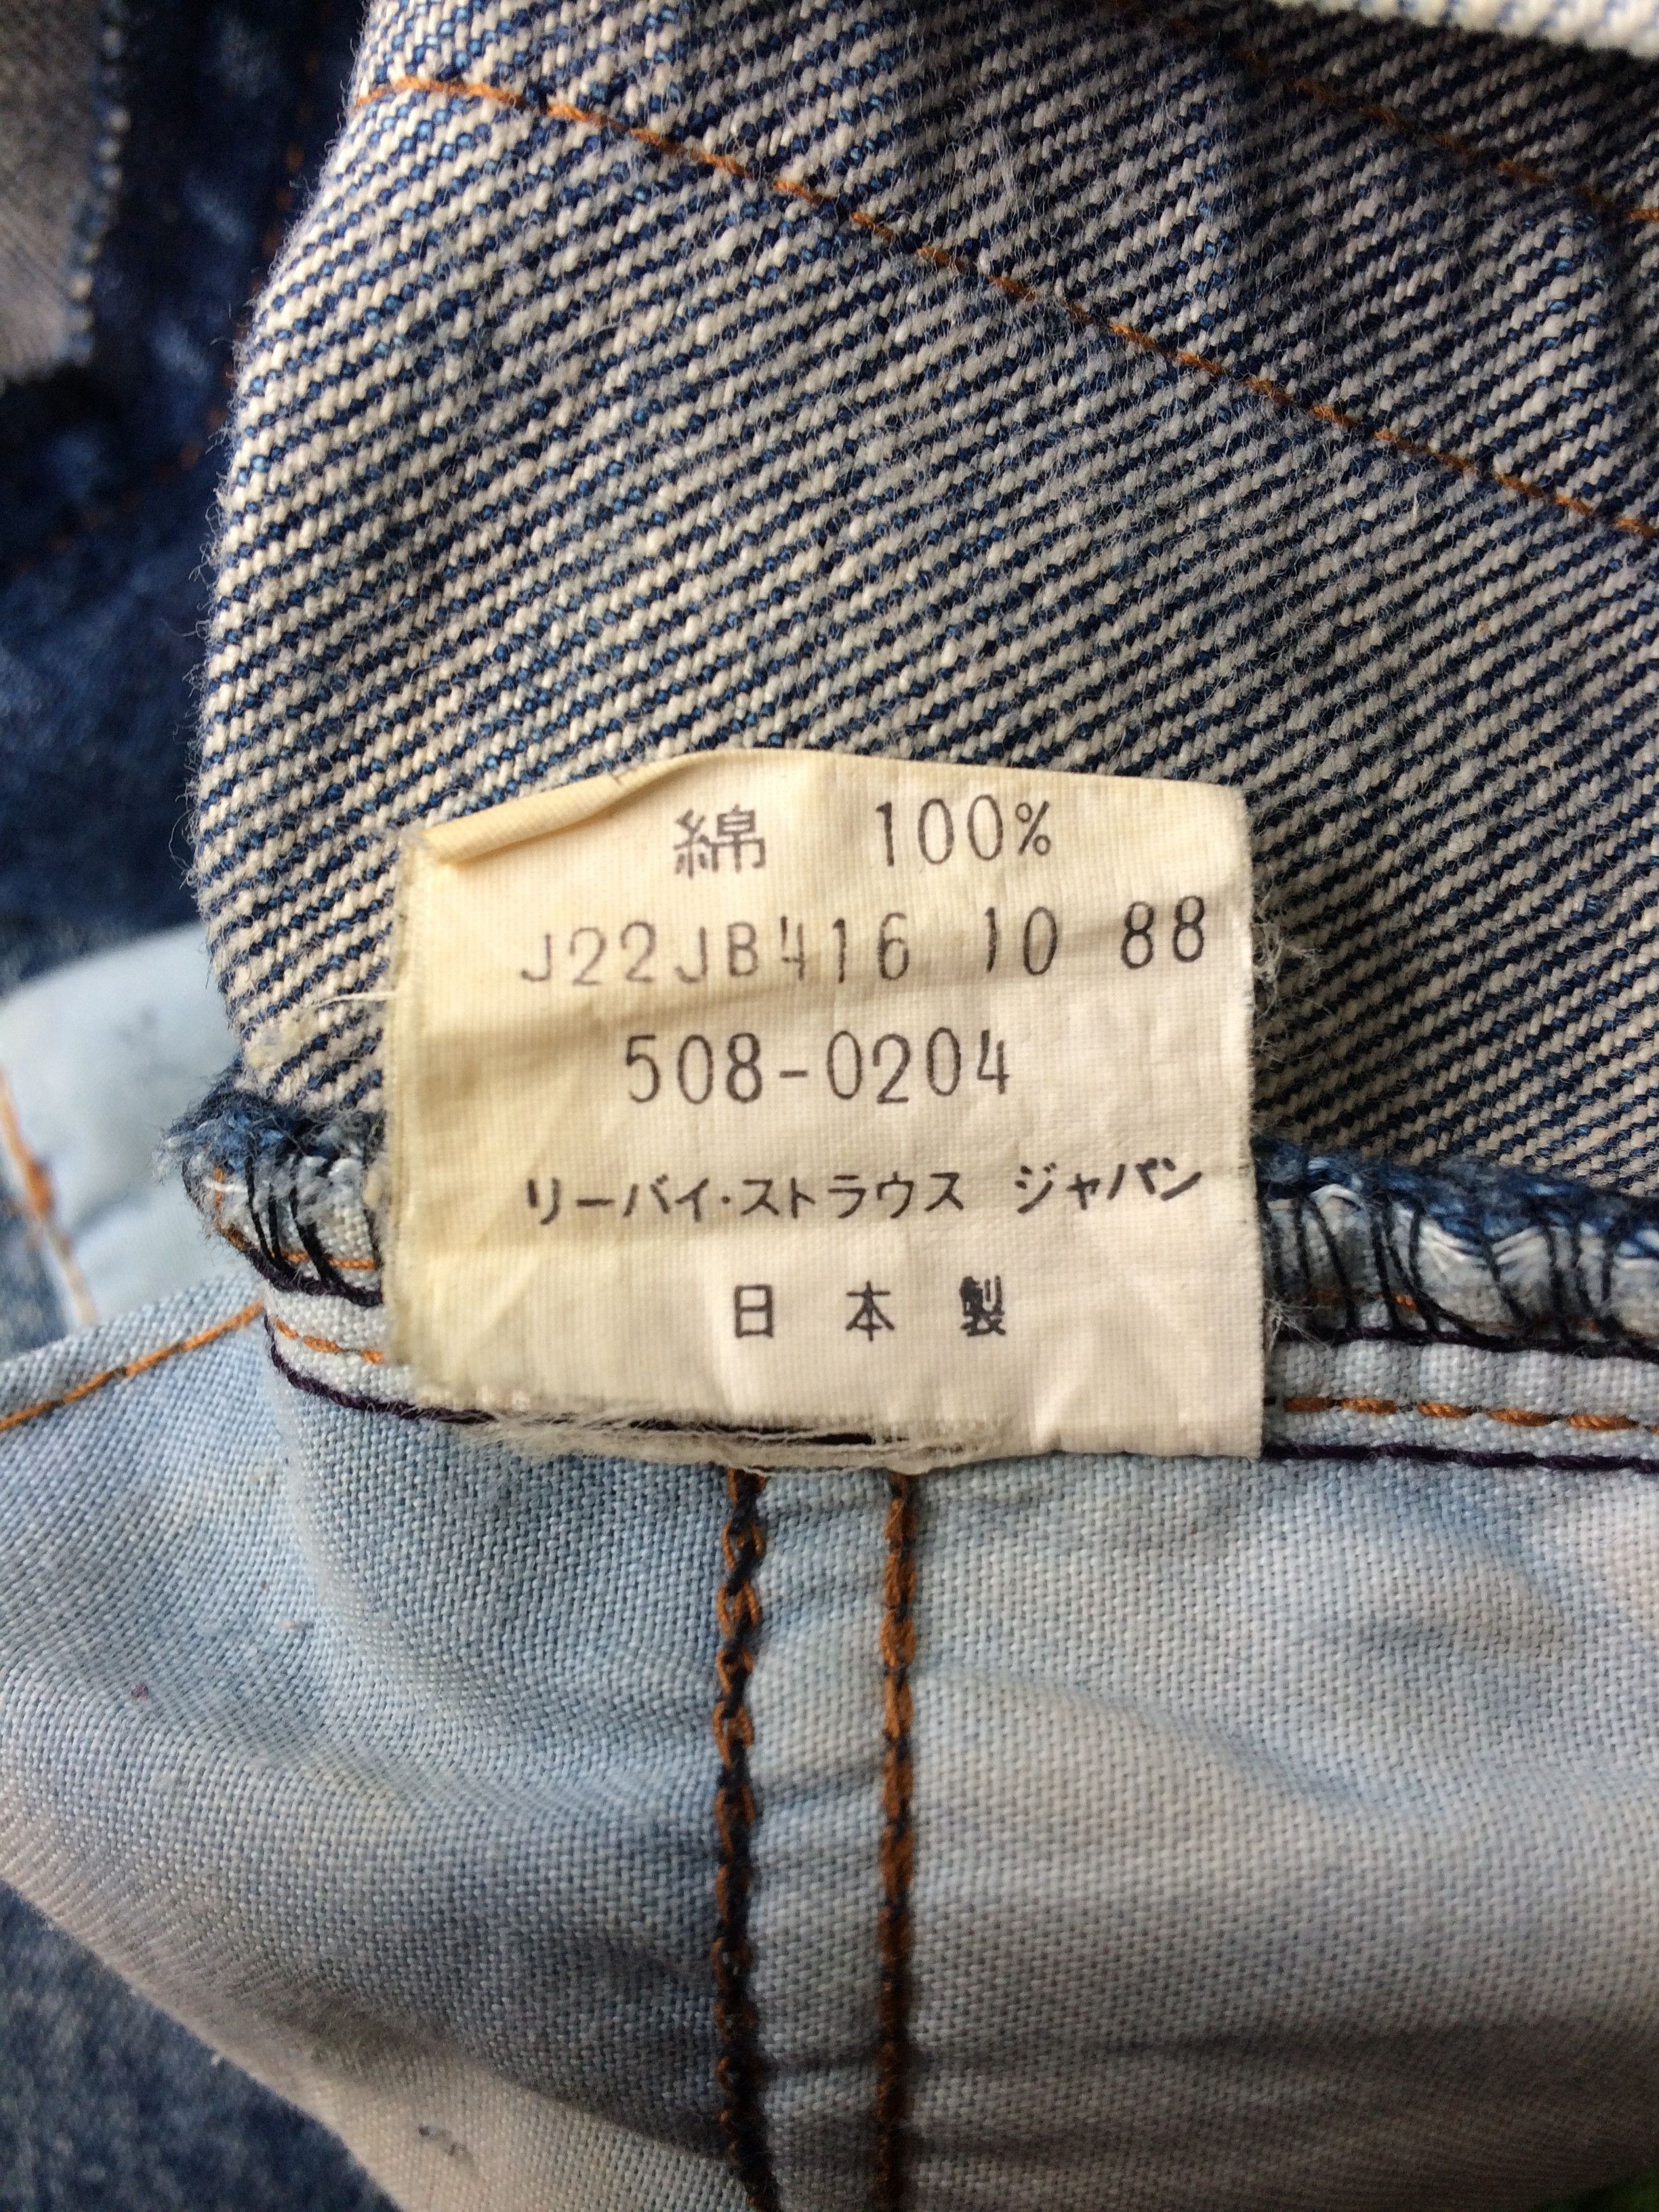 Vintage Distressed Levis 508 Acid Wash Jeans #B-495 Size US 30 / EU 46 - 10 Preview